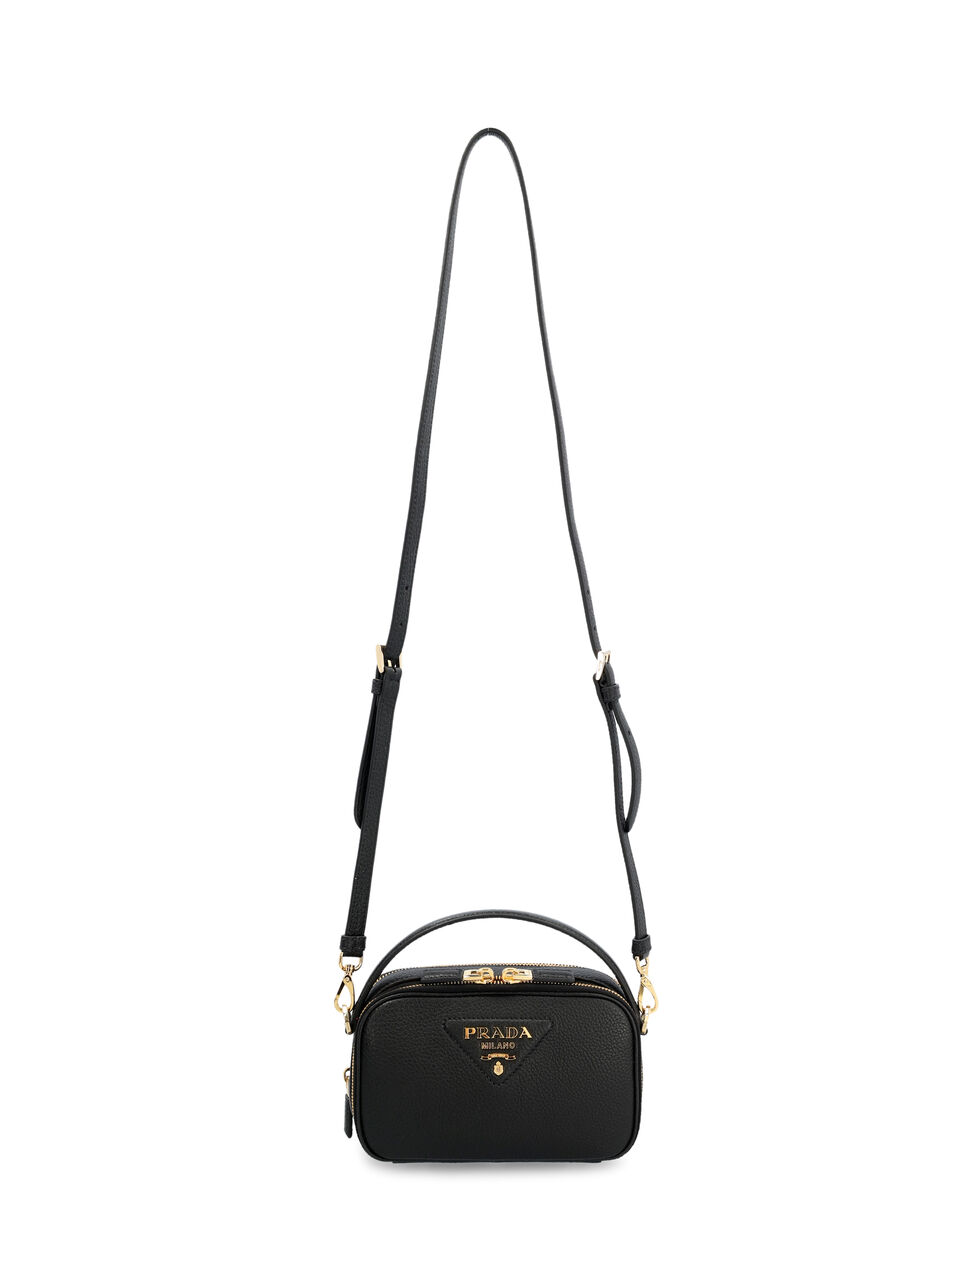 Prada Odette Leather Cross-body Bag in Black